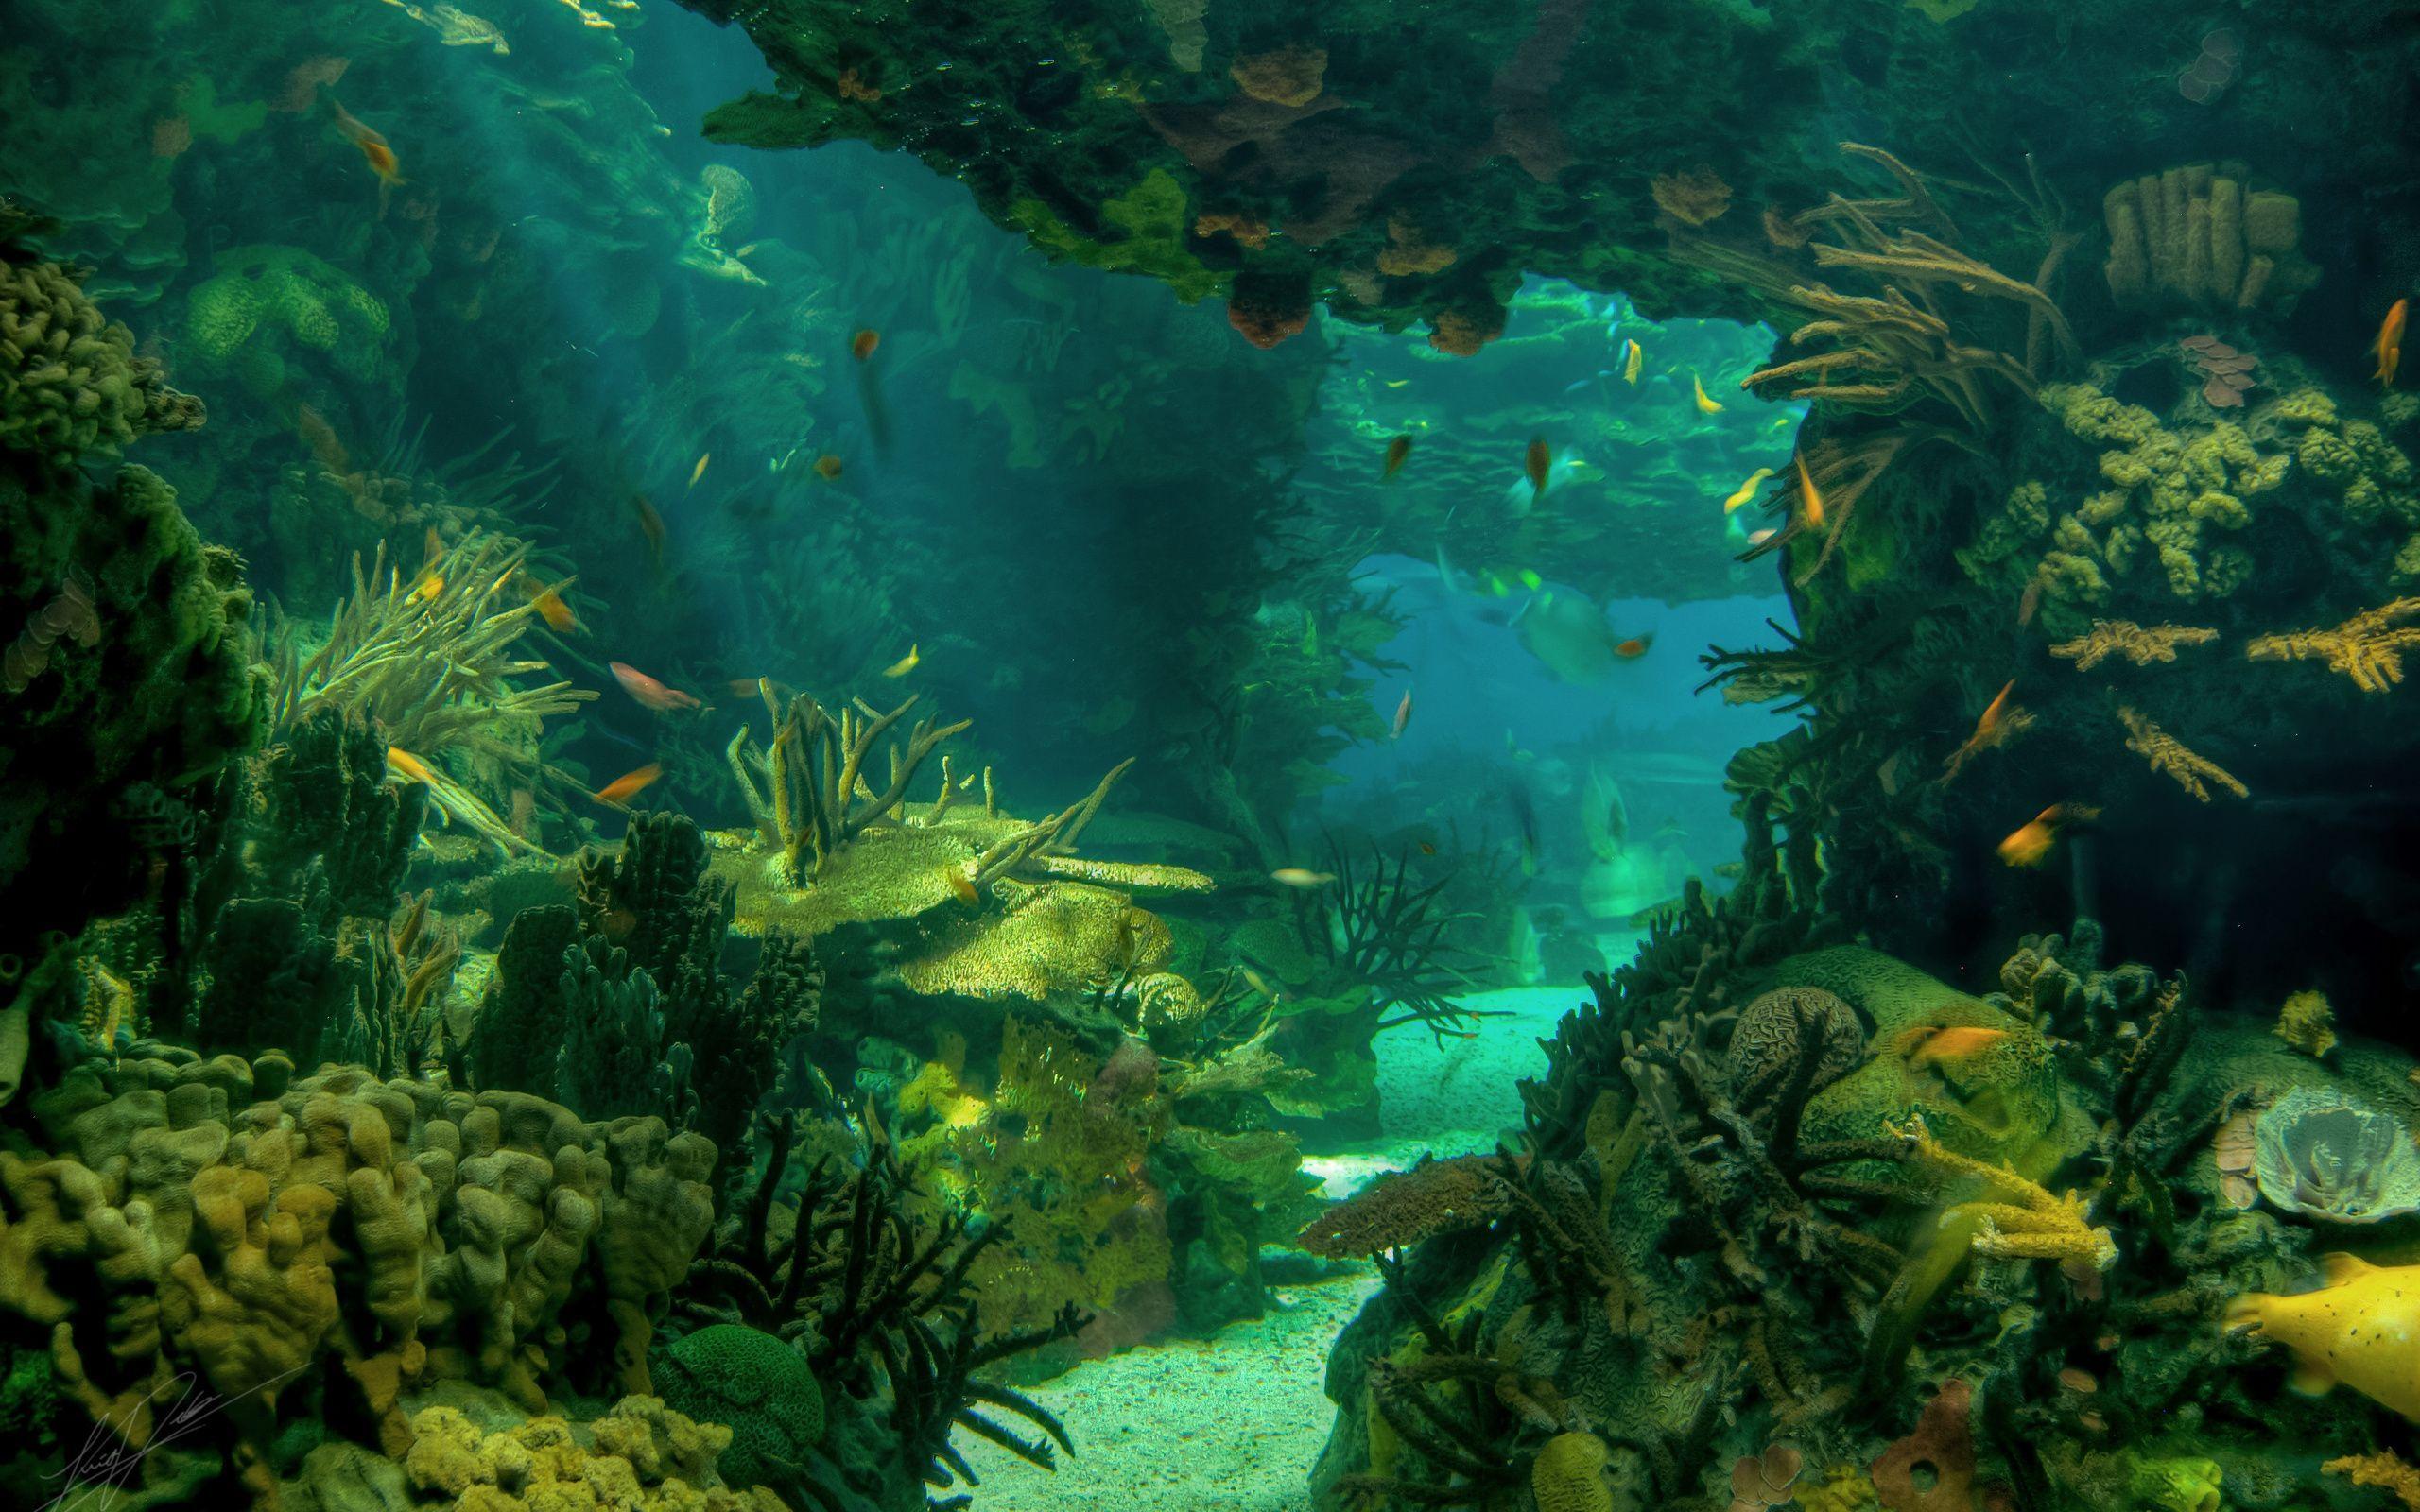 Underwater Forest: Hãy lạc vào một thế giới đầy màu sắc và bí ẩn của những khu rừng dưới nước. Xem yên tĩnh nhưng đầy sức sống của các loài sinh vật dưới đại dương. Hãy cho mắt và tâm hồn bạn được thỏa sức bay bổng và phiêu lưu trong không gian tuyệt đẹp này.